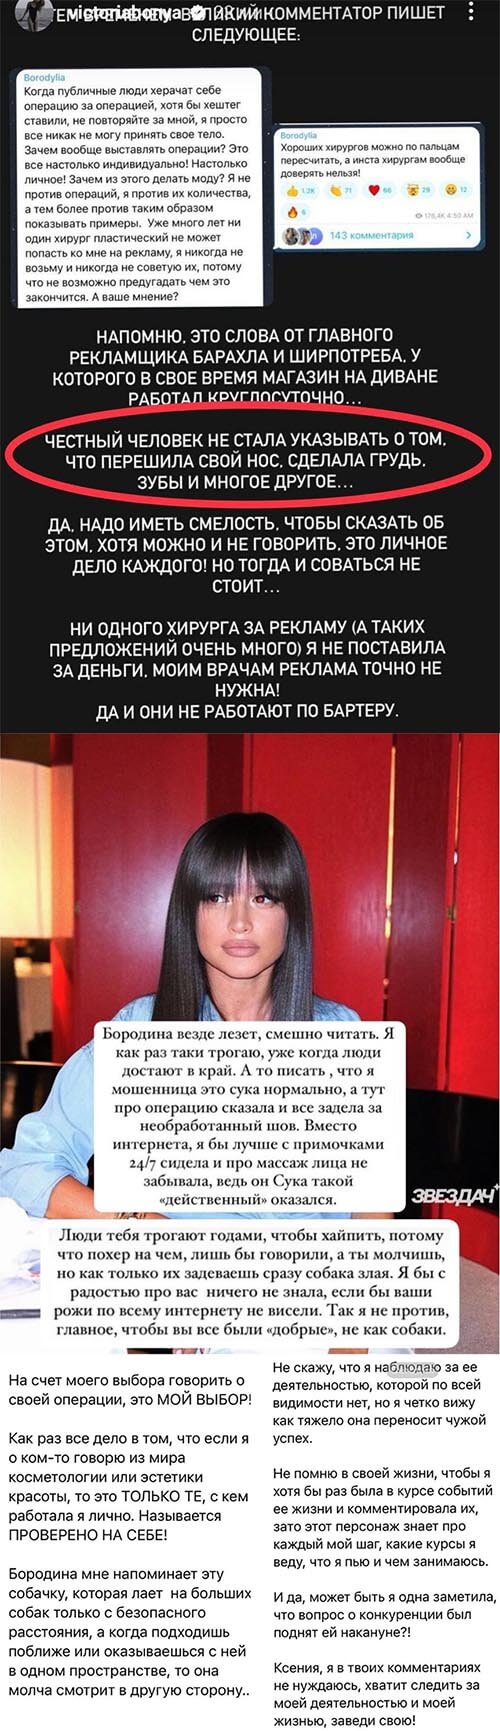 Пост Виктории Боня вконтакте